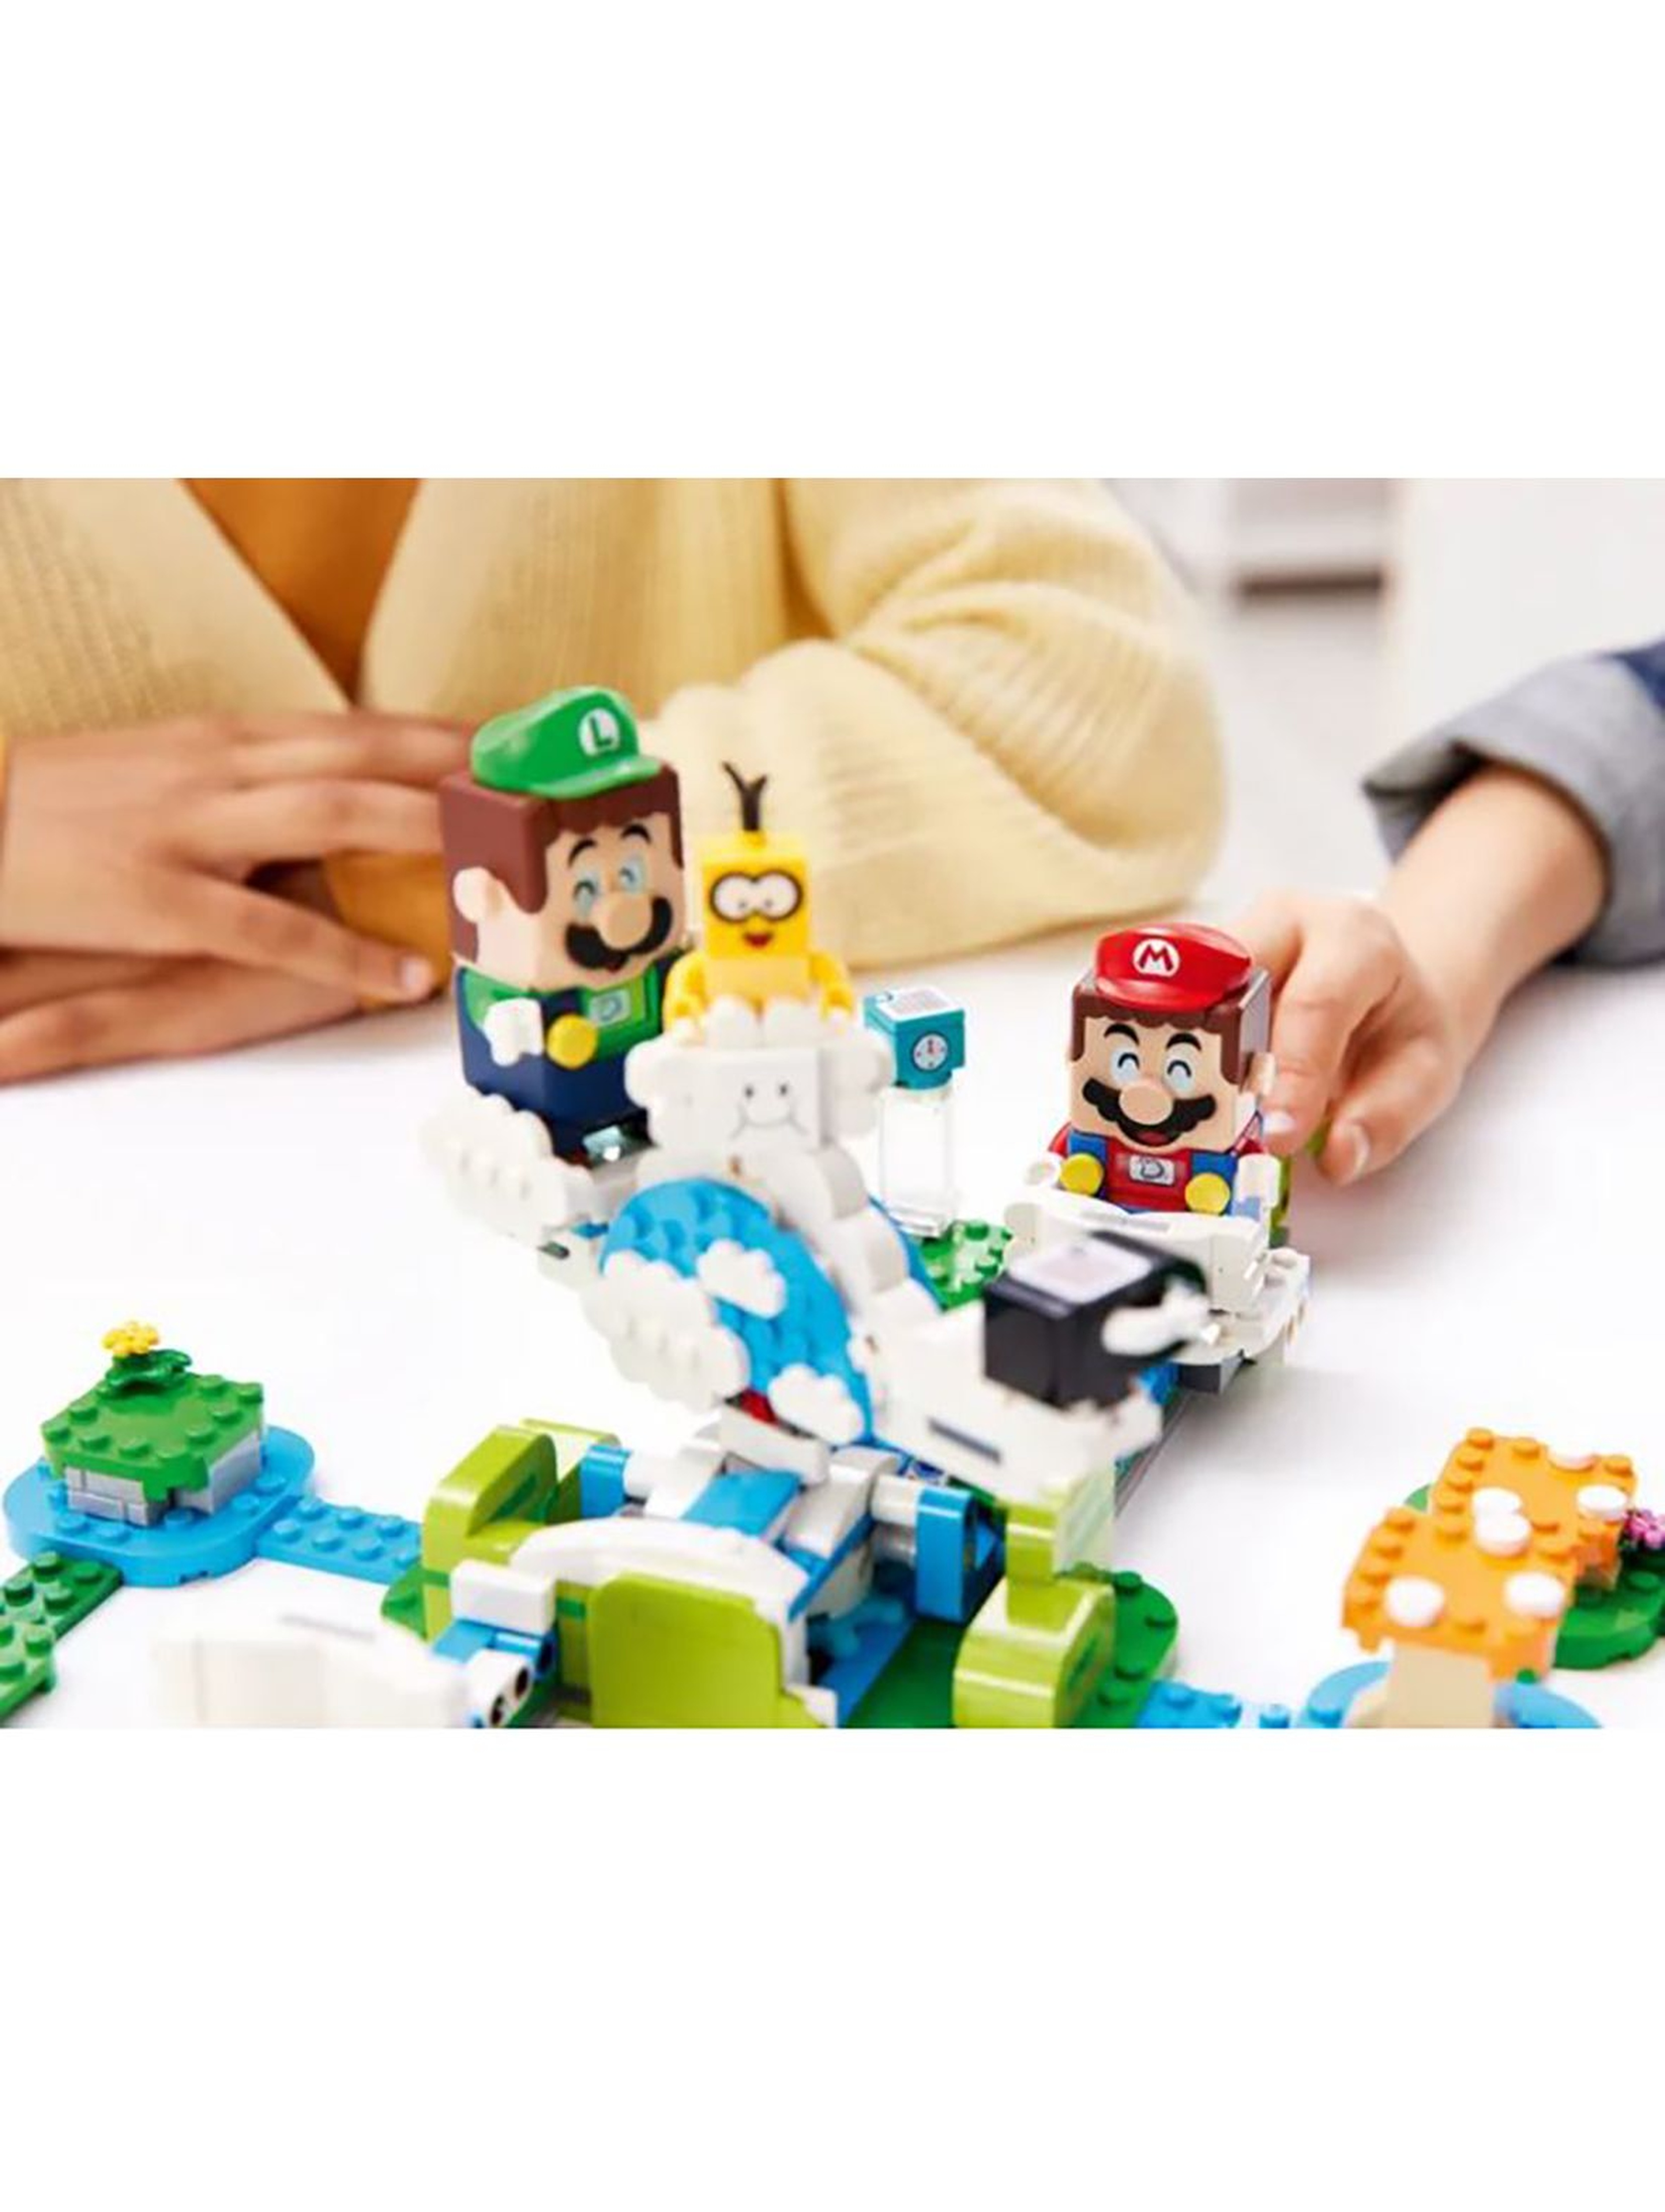 Klocki LEGO® Mario Produkt Podniebny świat Lakitu — zestaw dodatkowy 71389 wiek 7+